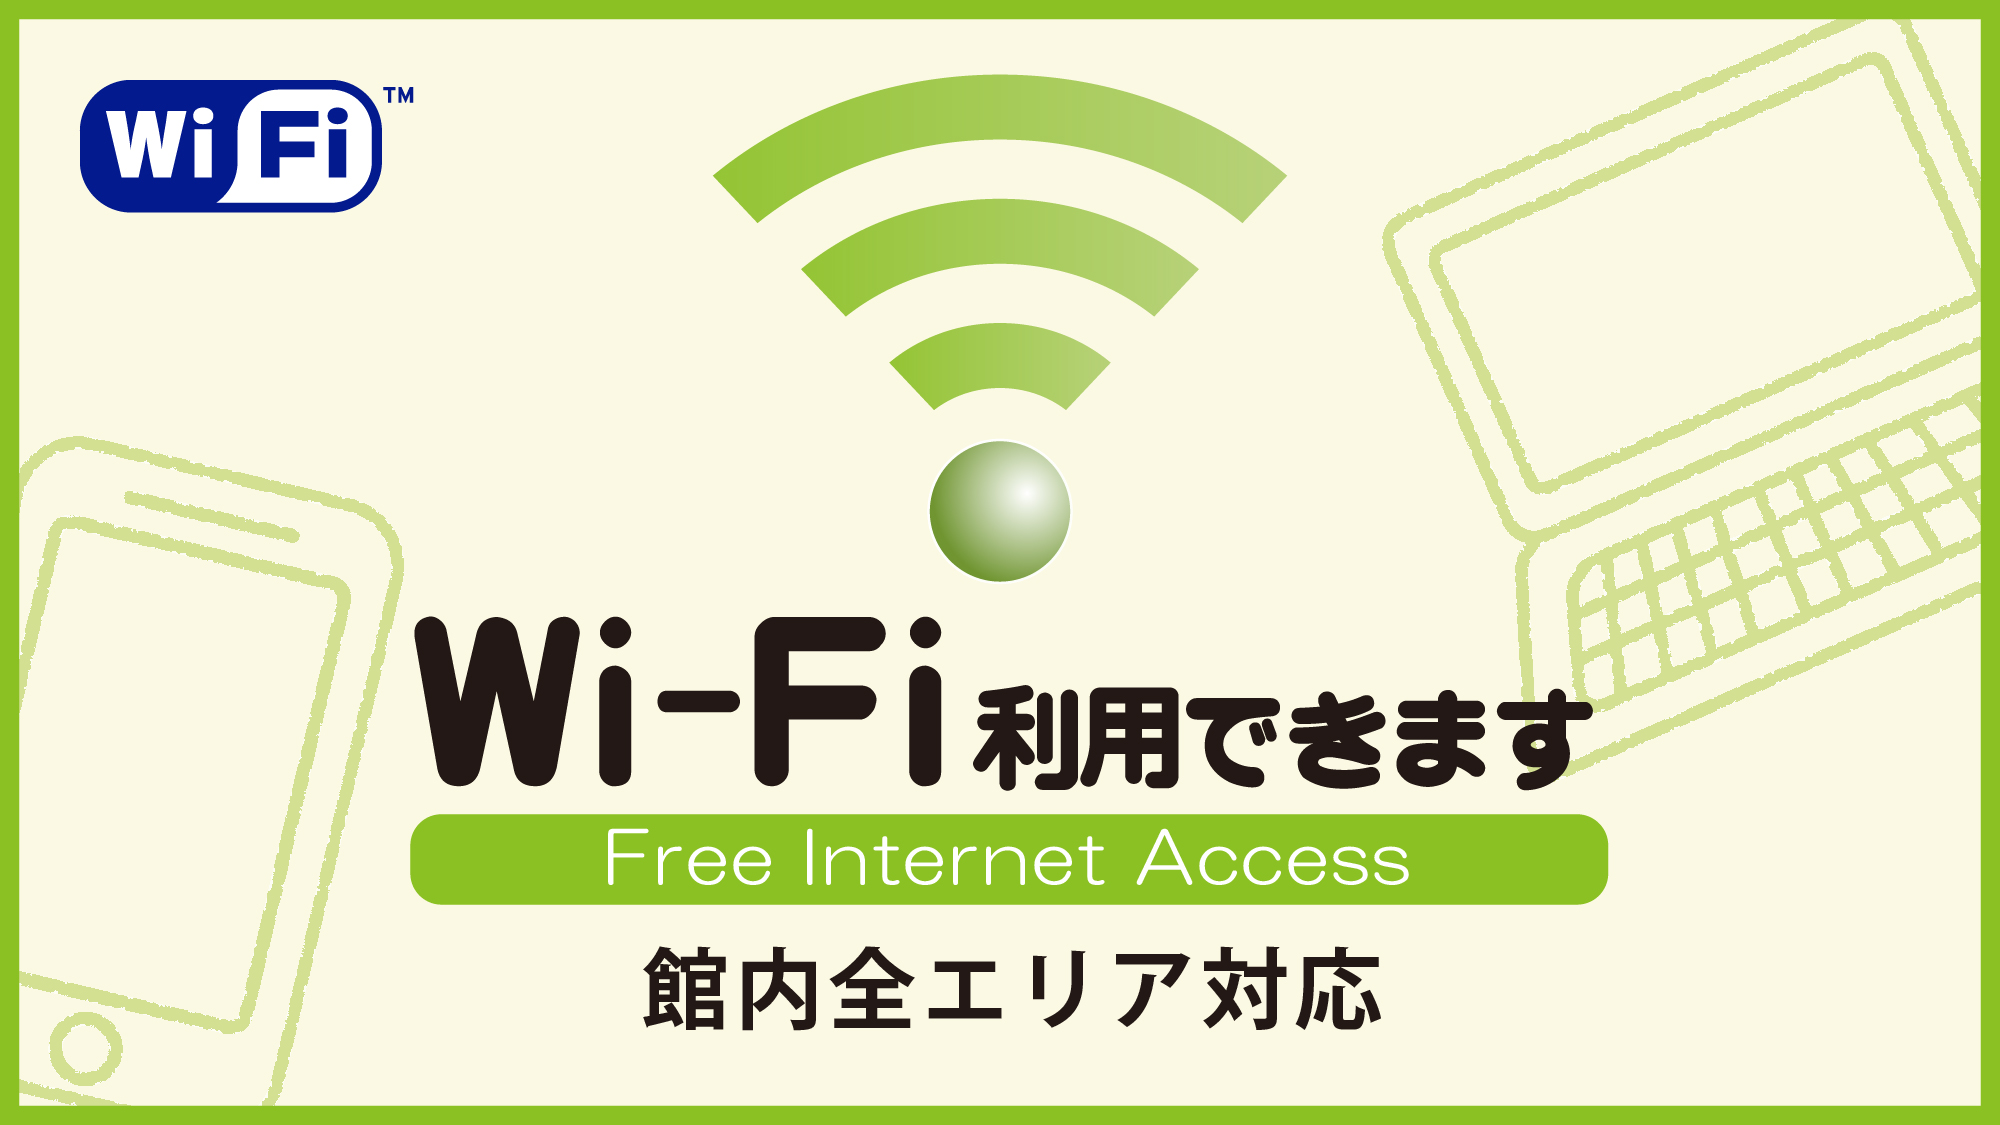 Wi-Fi ホテル館内全エリア対応